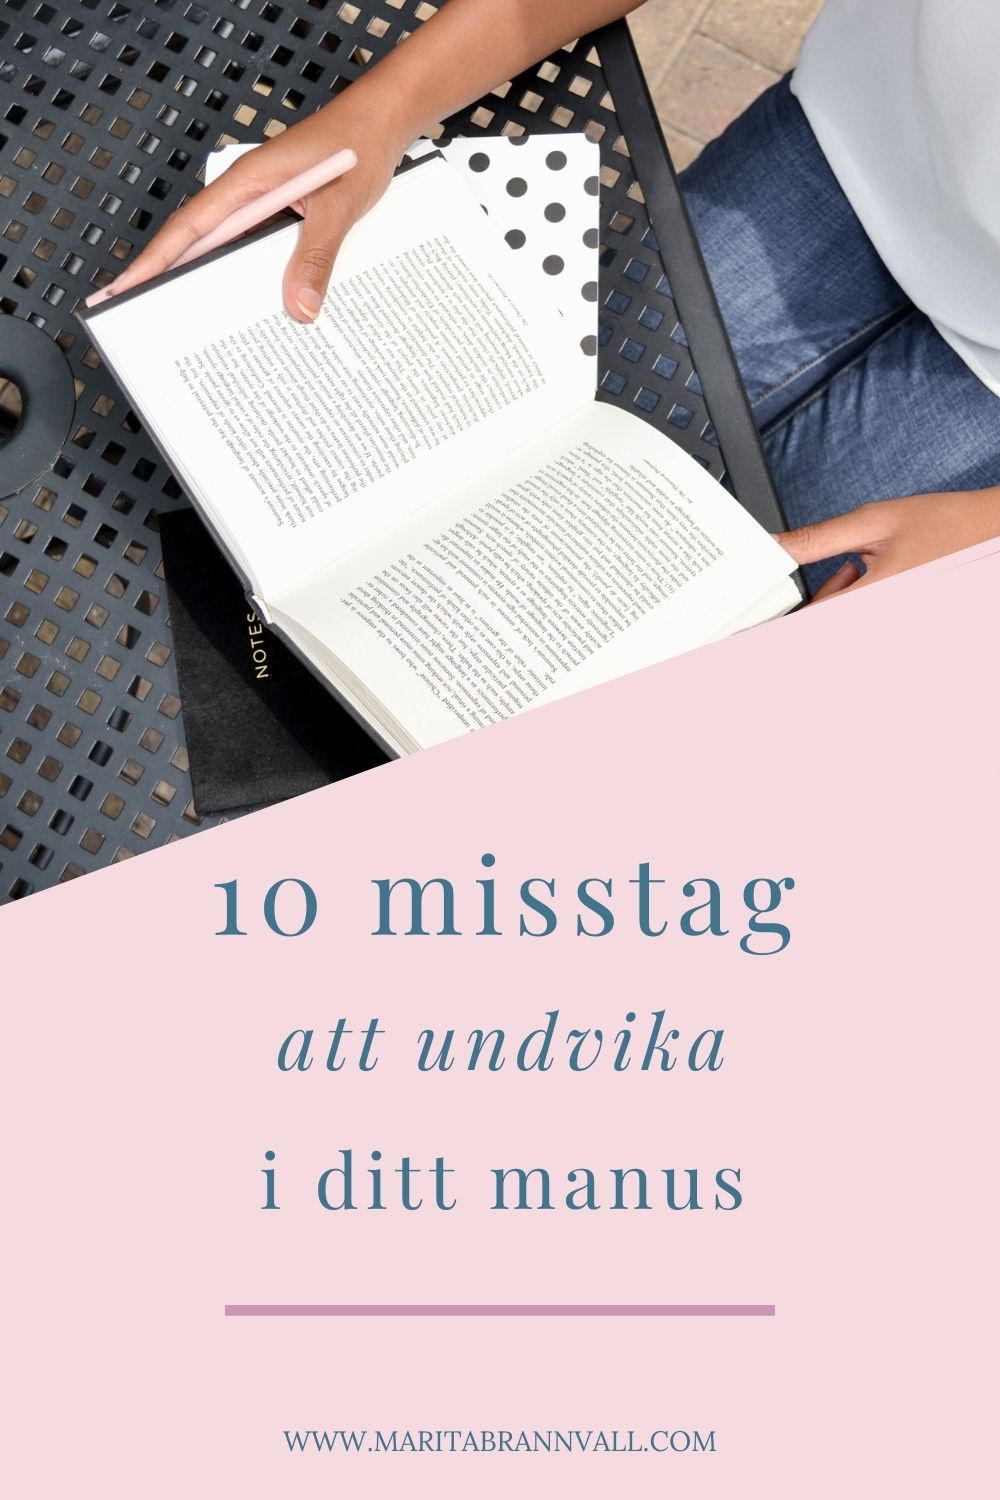 10 misstag i ditt manus - Marita Brännvall